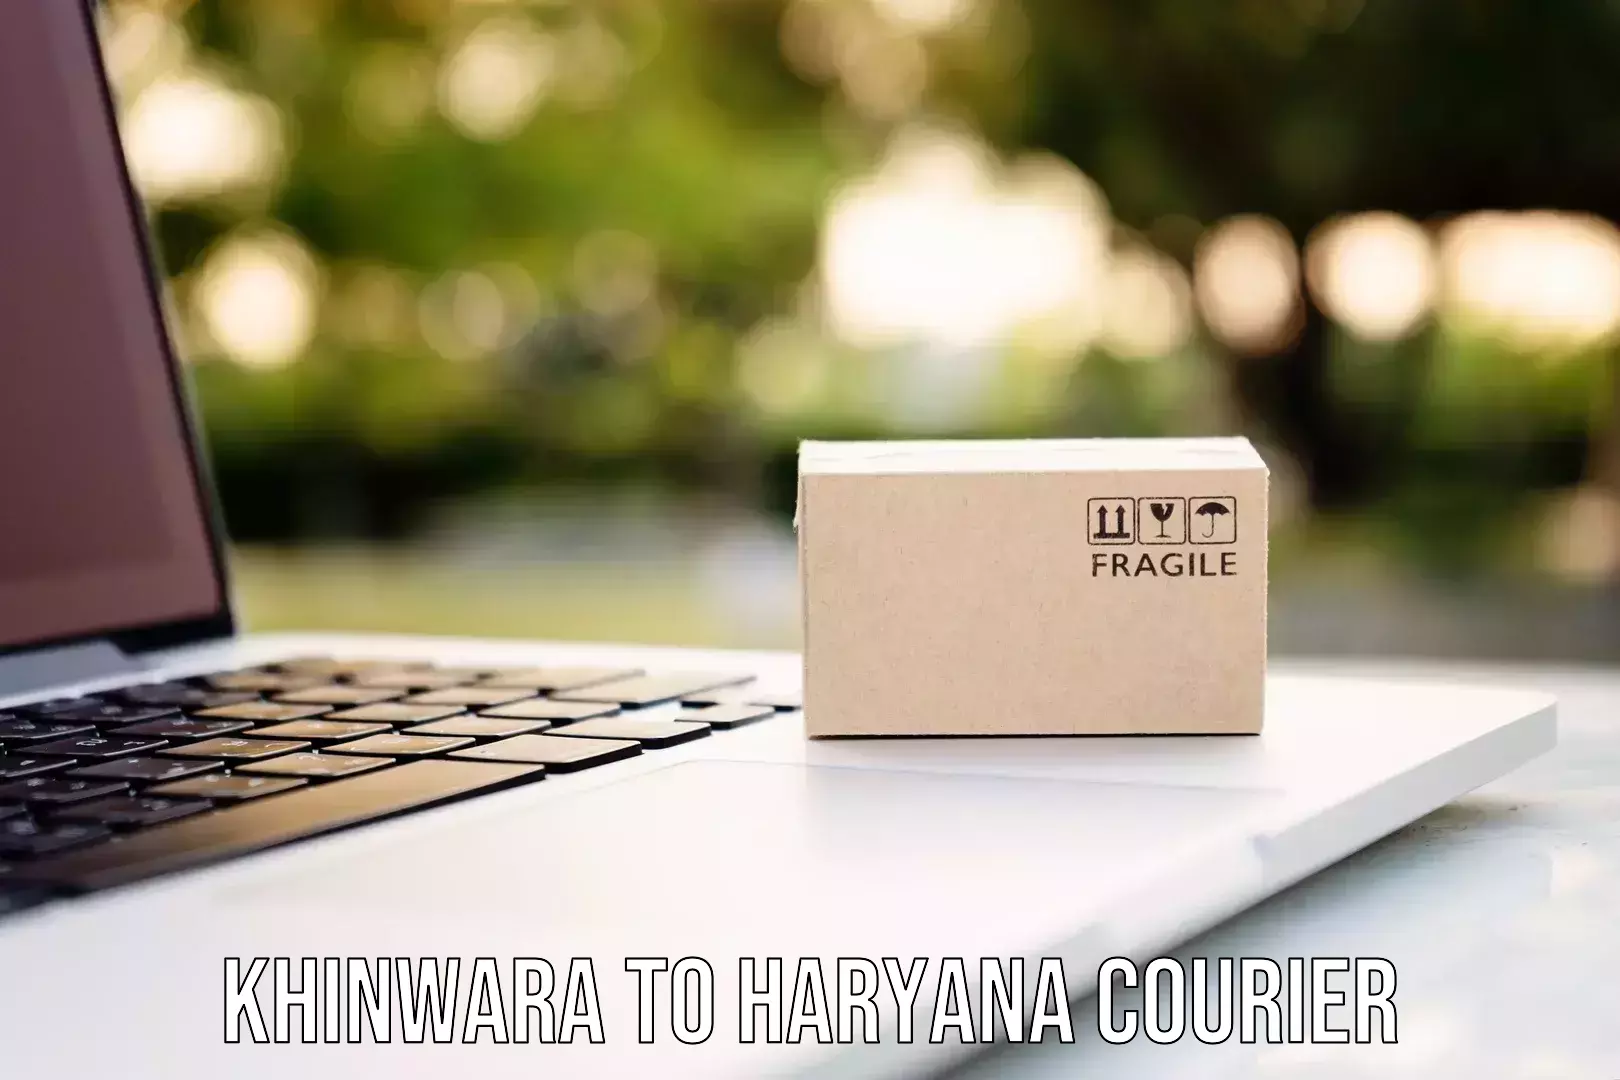 Enhanced tracking features Khinwara to Hansi